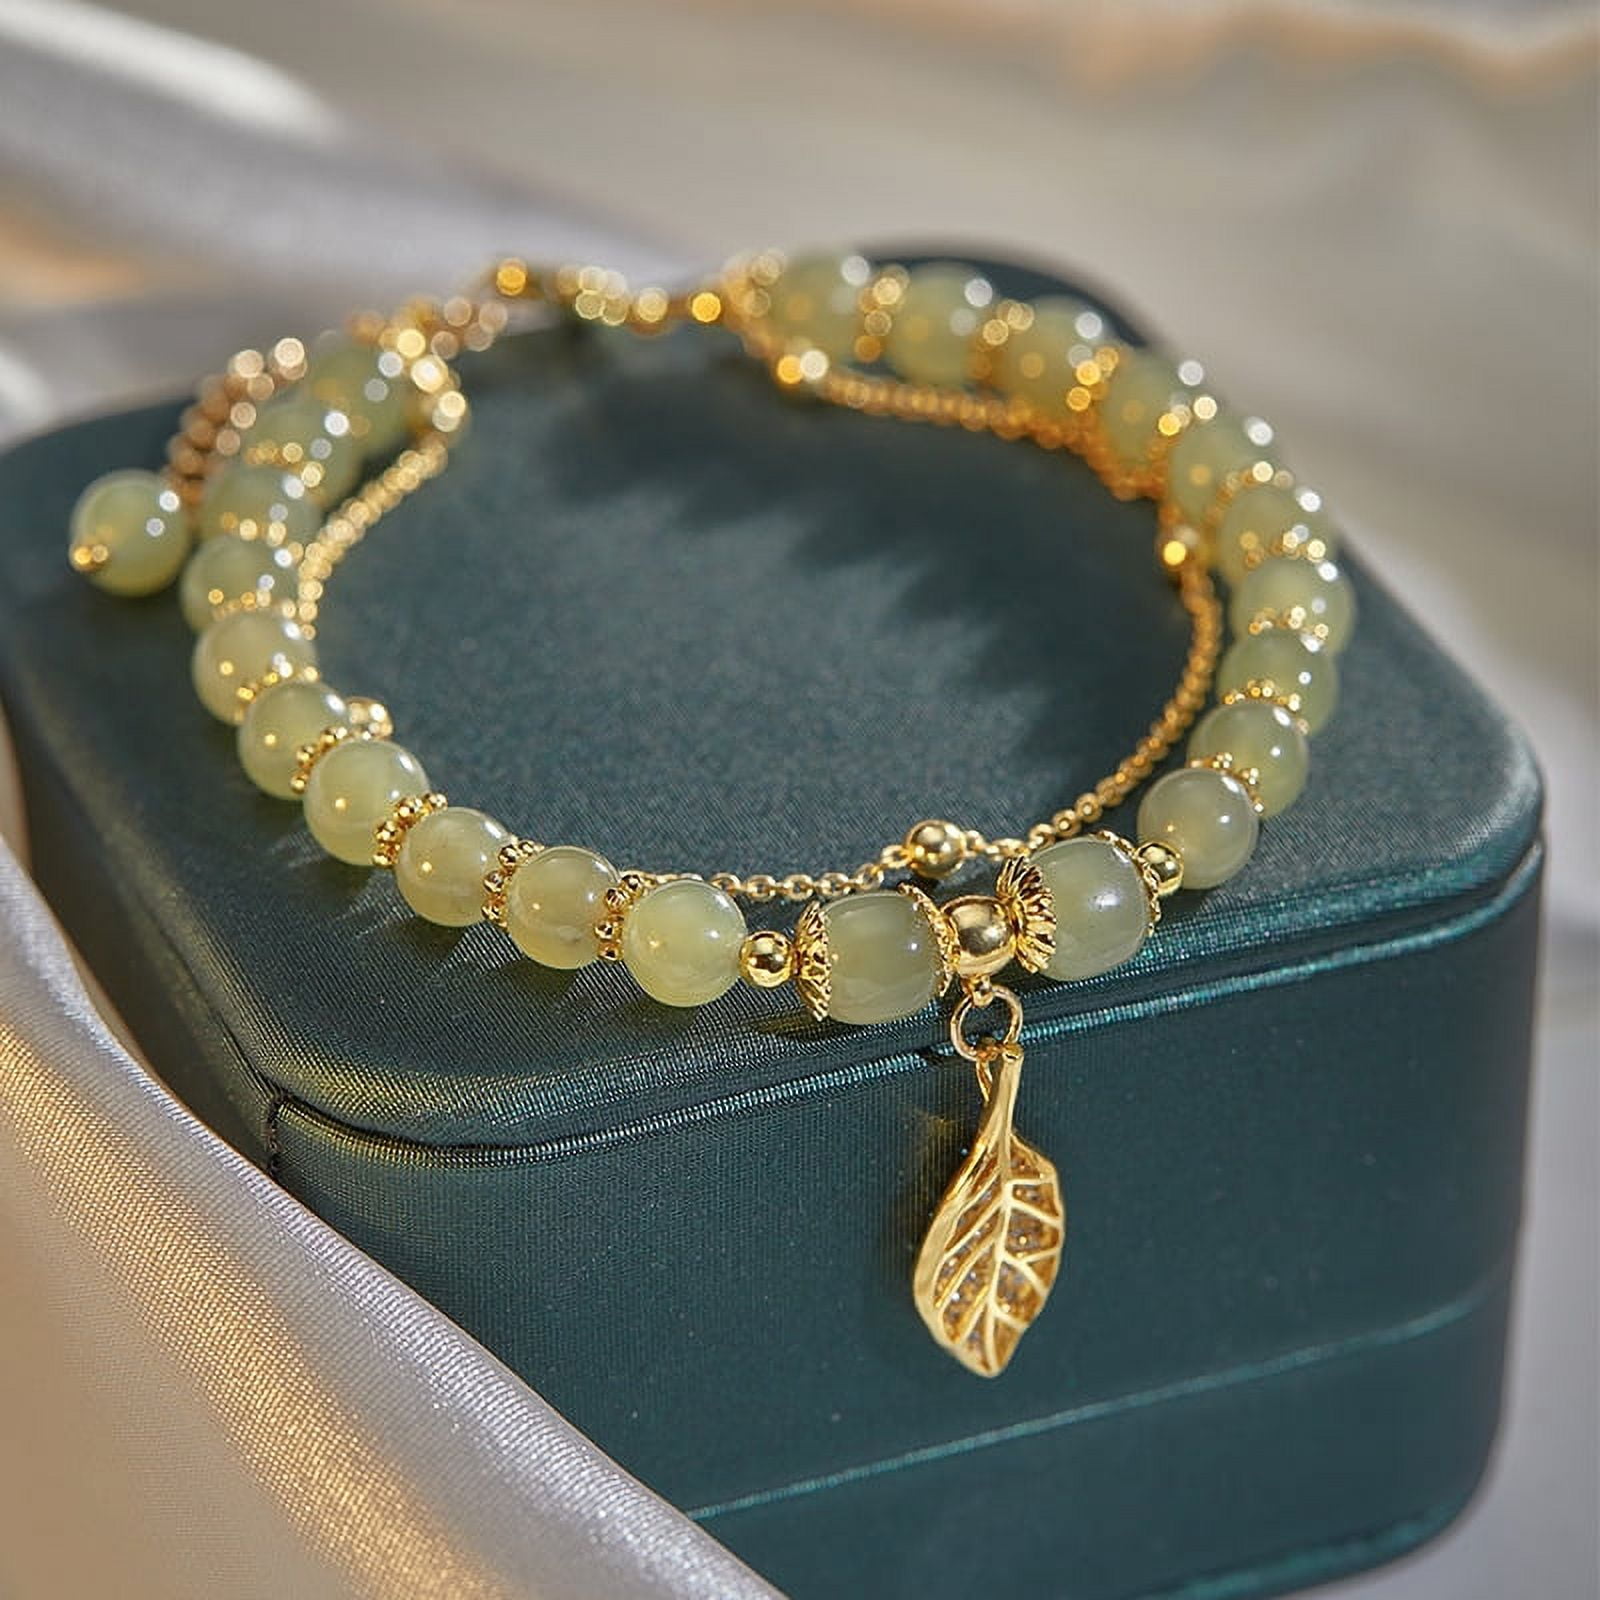 Flowing Leaf 22k Gold Bangle Bracelet | Gold leaf bangle, 22k gold bangles,  Gold bangles